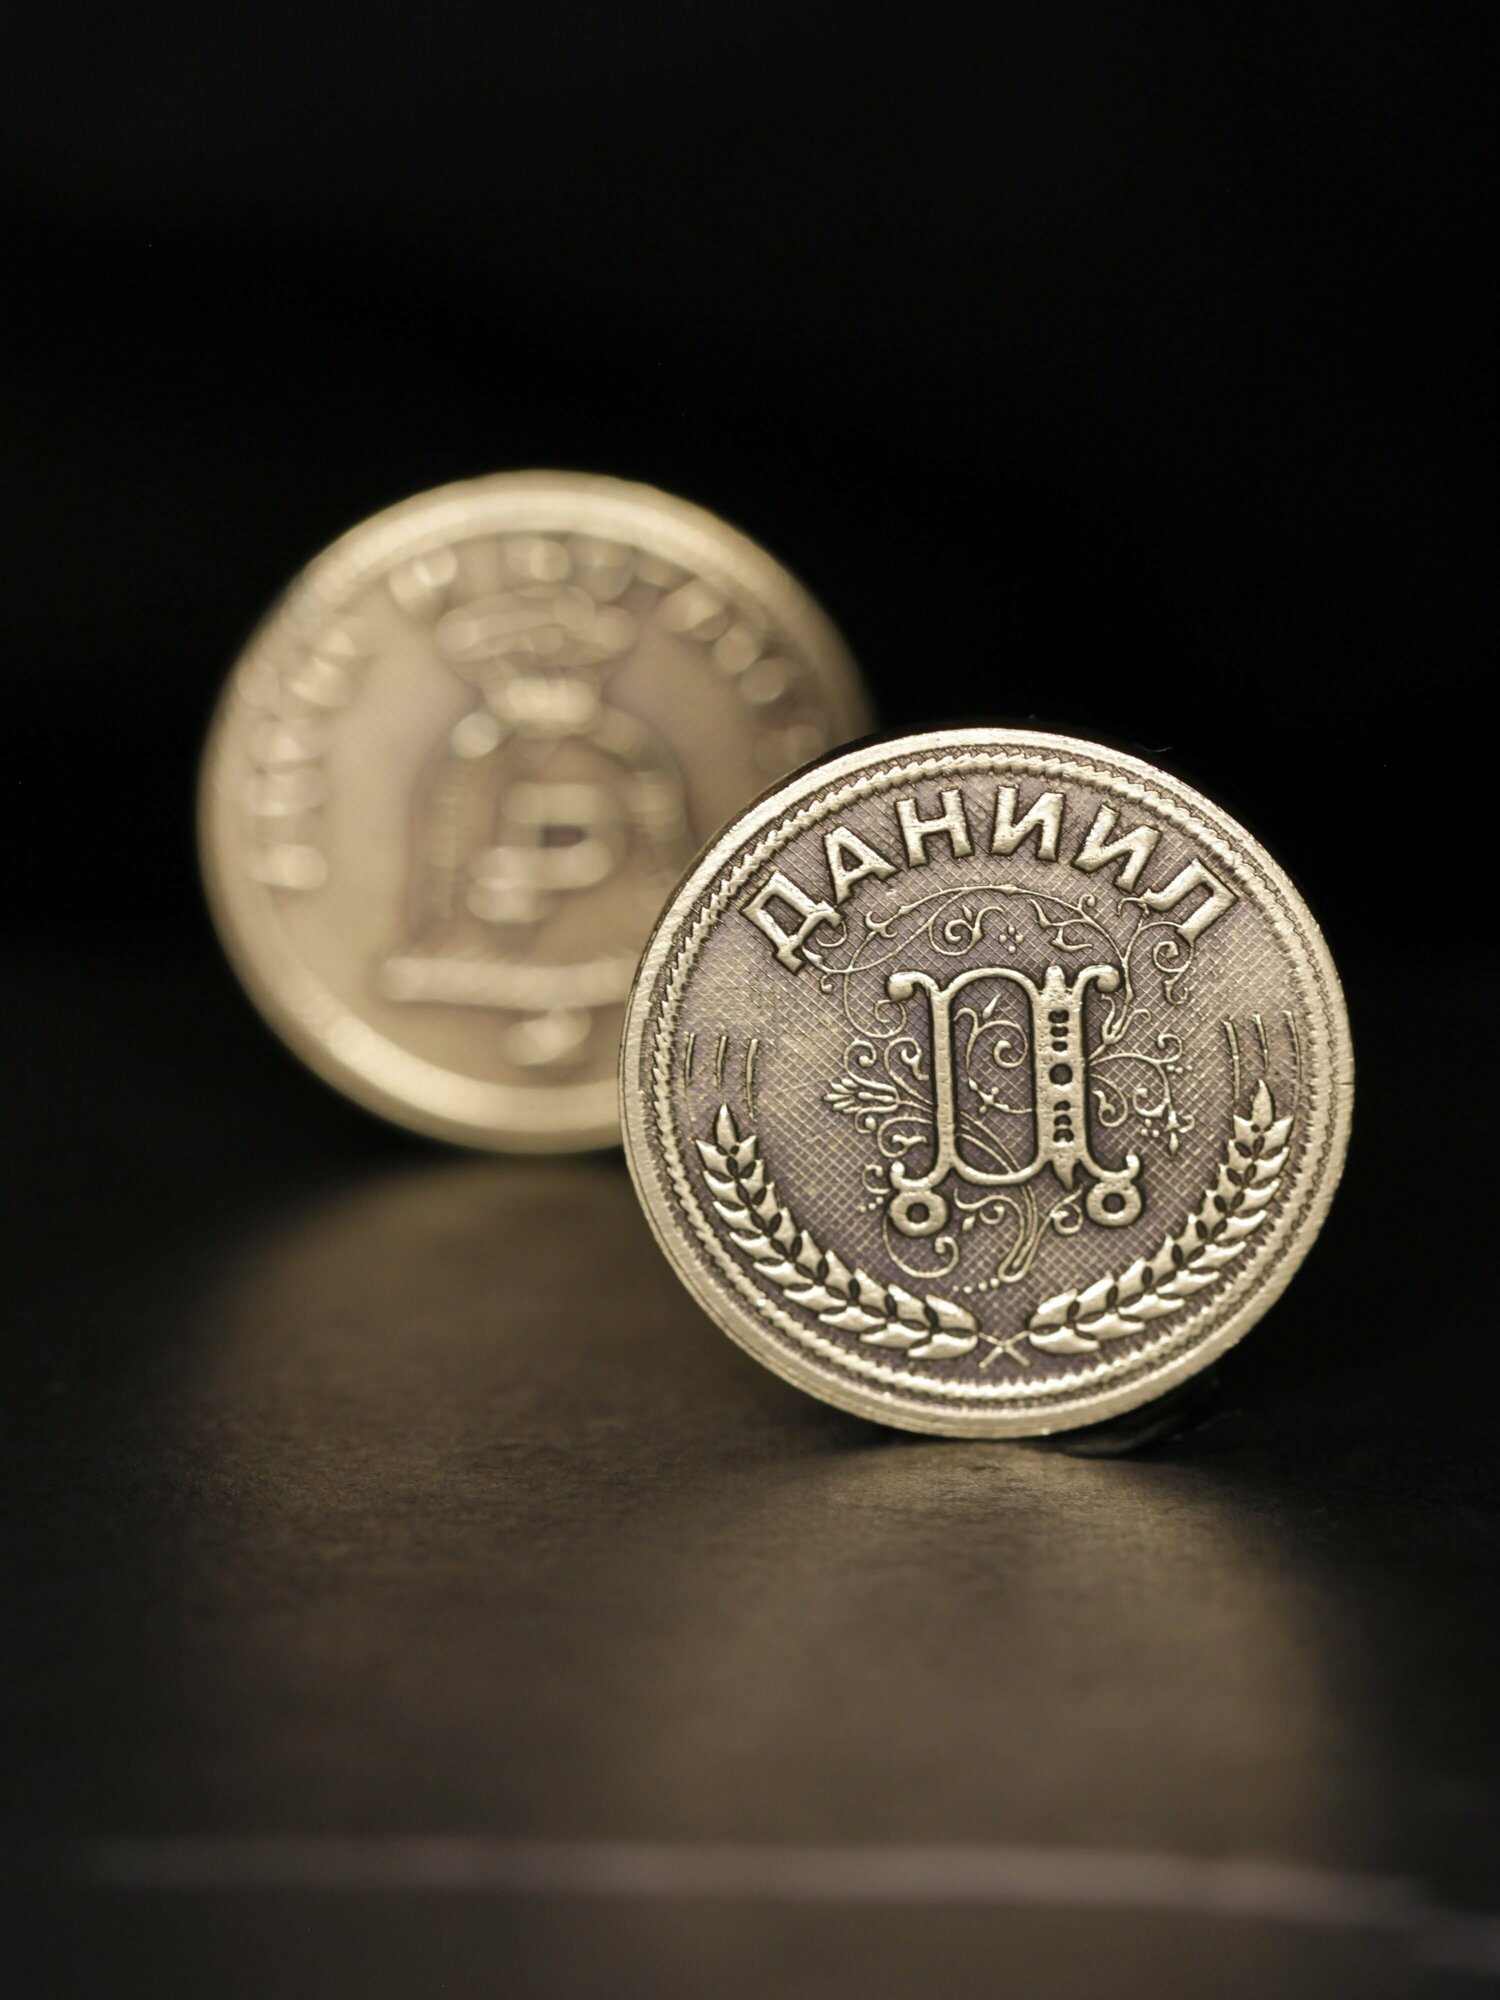 Именная оригинальна сувенирная монетка в подарок на богатство и удачу мужчине или мальчику - Даниил